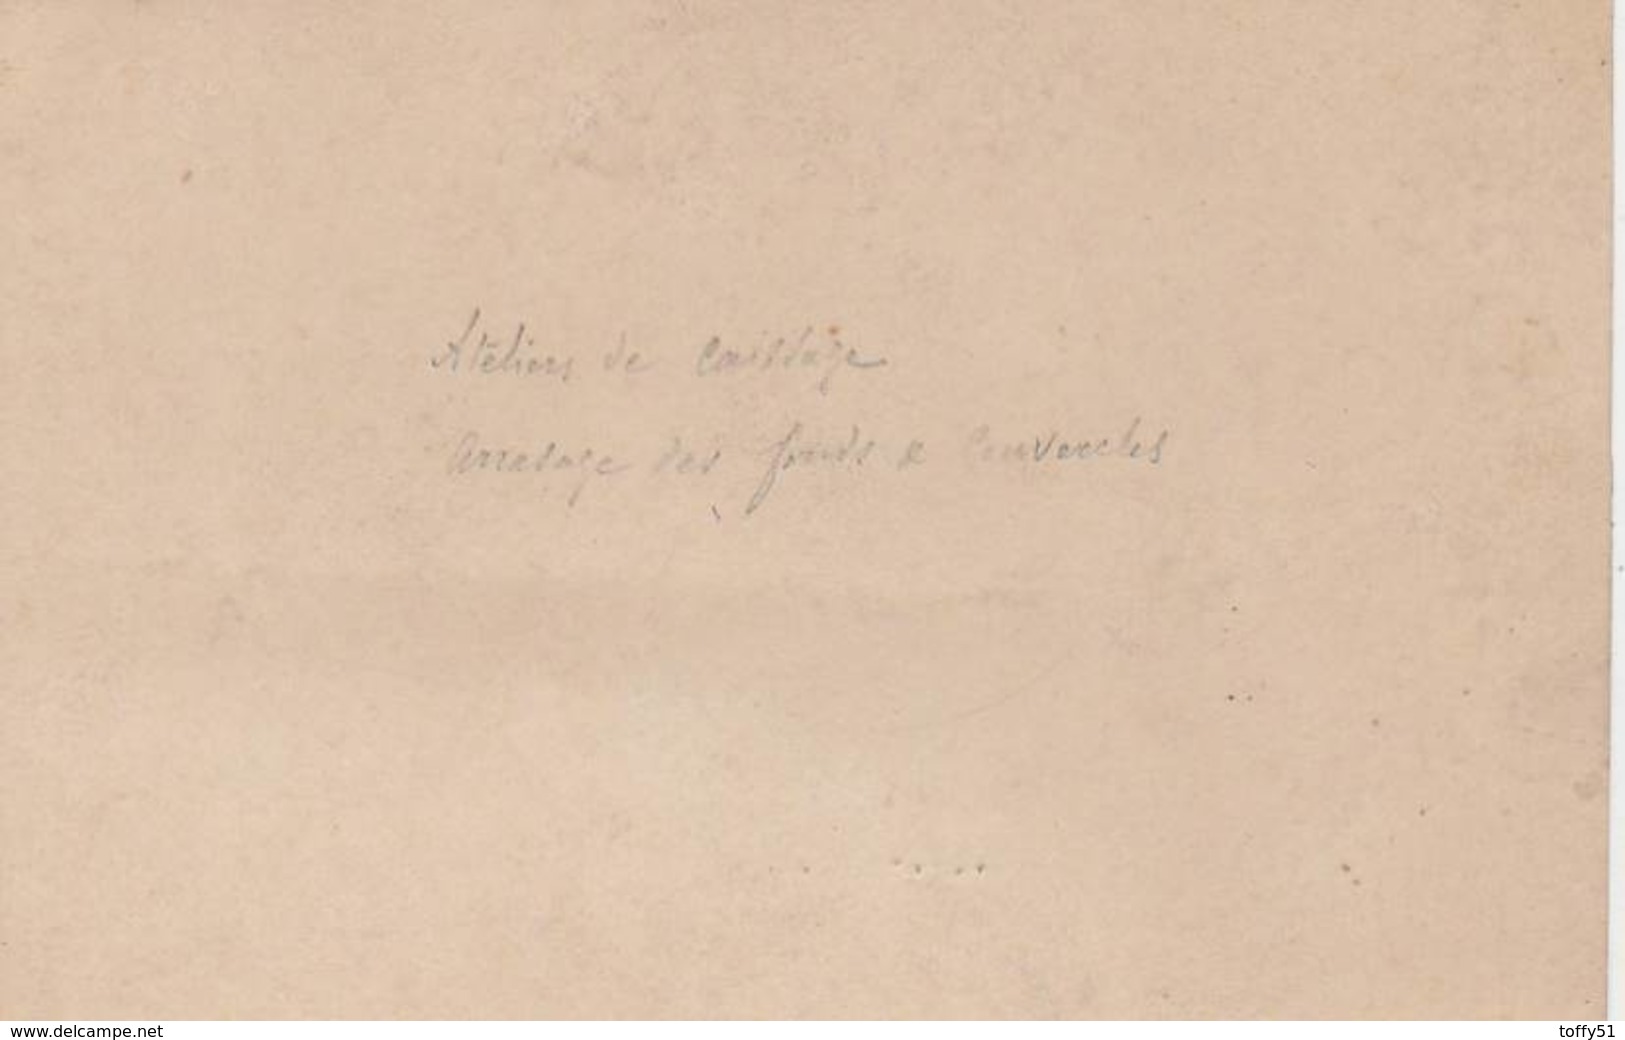 PHOTO SOUPLE (13.5x8.5 Cm) OUVRIERS ATELIERS DE CAISSAGE USINE PERNOD FILS ANNÉE 1910 ENVIRON PONTARLIER (25) - Métiers